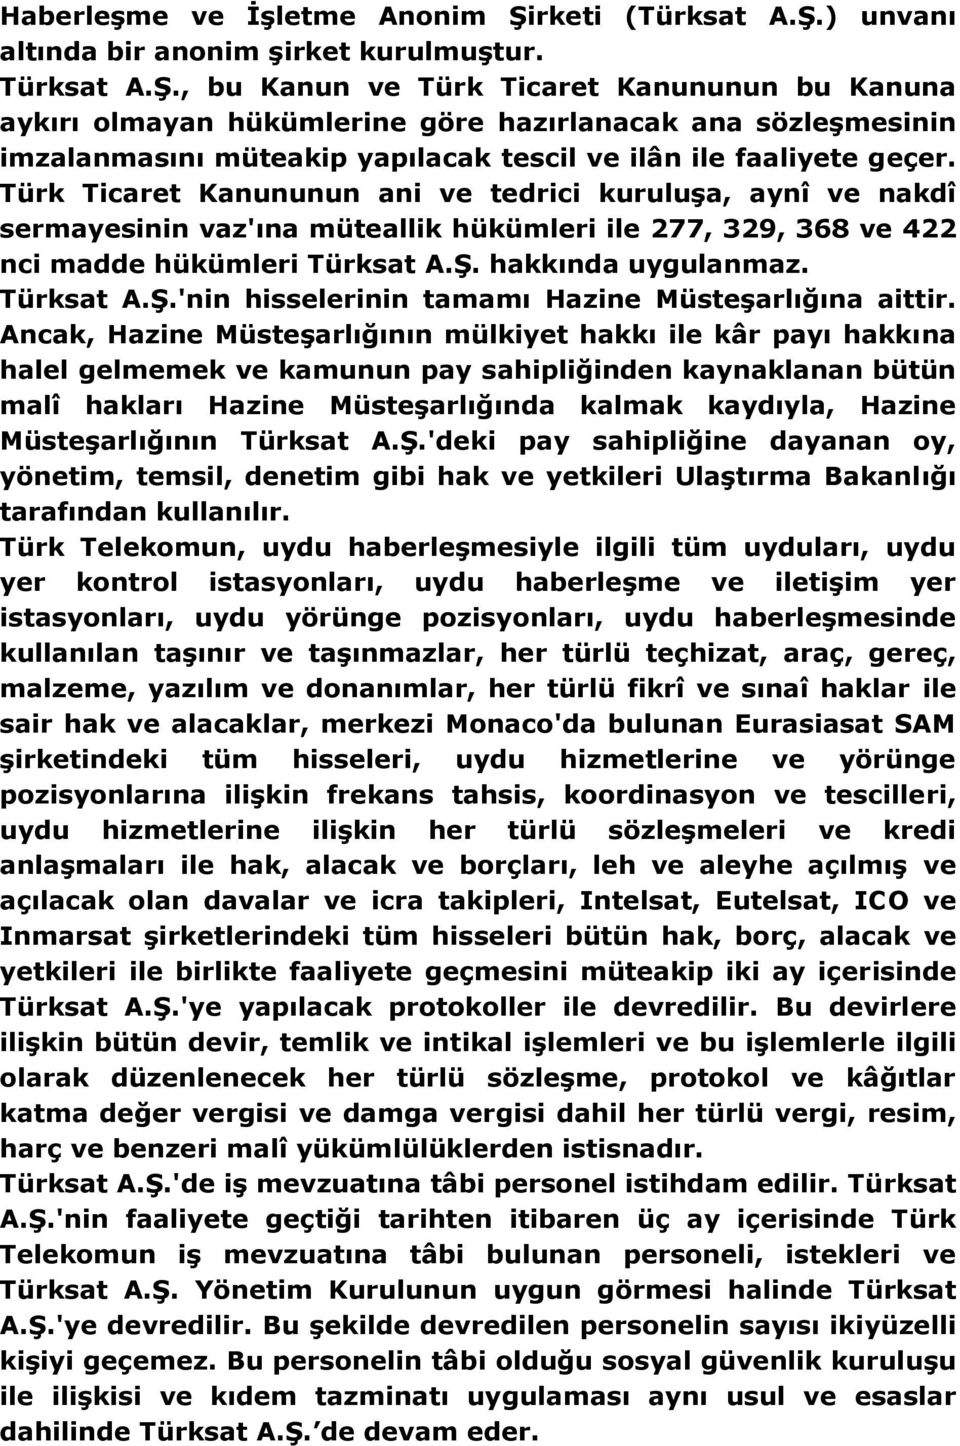 Türk Ticaret Kanununun ani ve tedrici kuruluşa, aynî ve nakdî sermayesinin vaz'ına müteallik hükümleri ile 277, 329, 368 ve 422 nci madde hükümleri Türksat A.Ş.